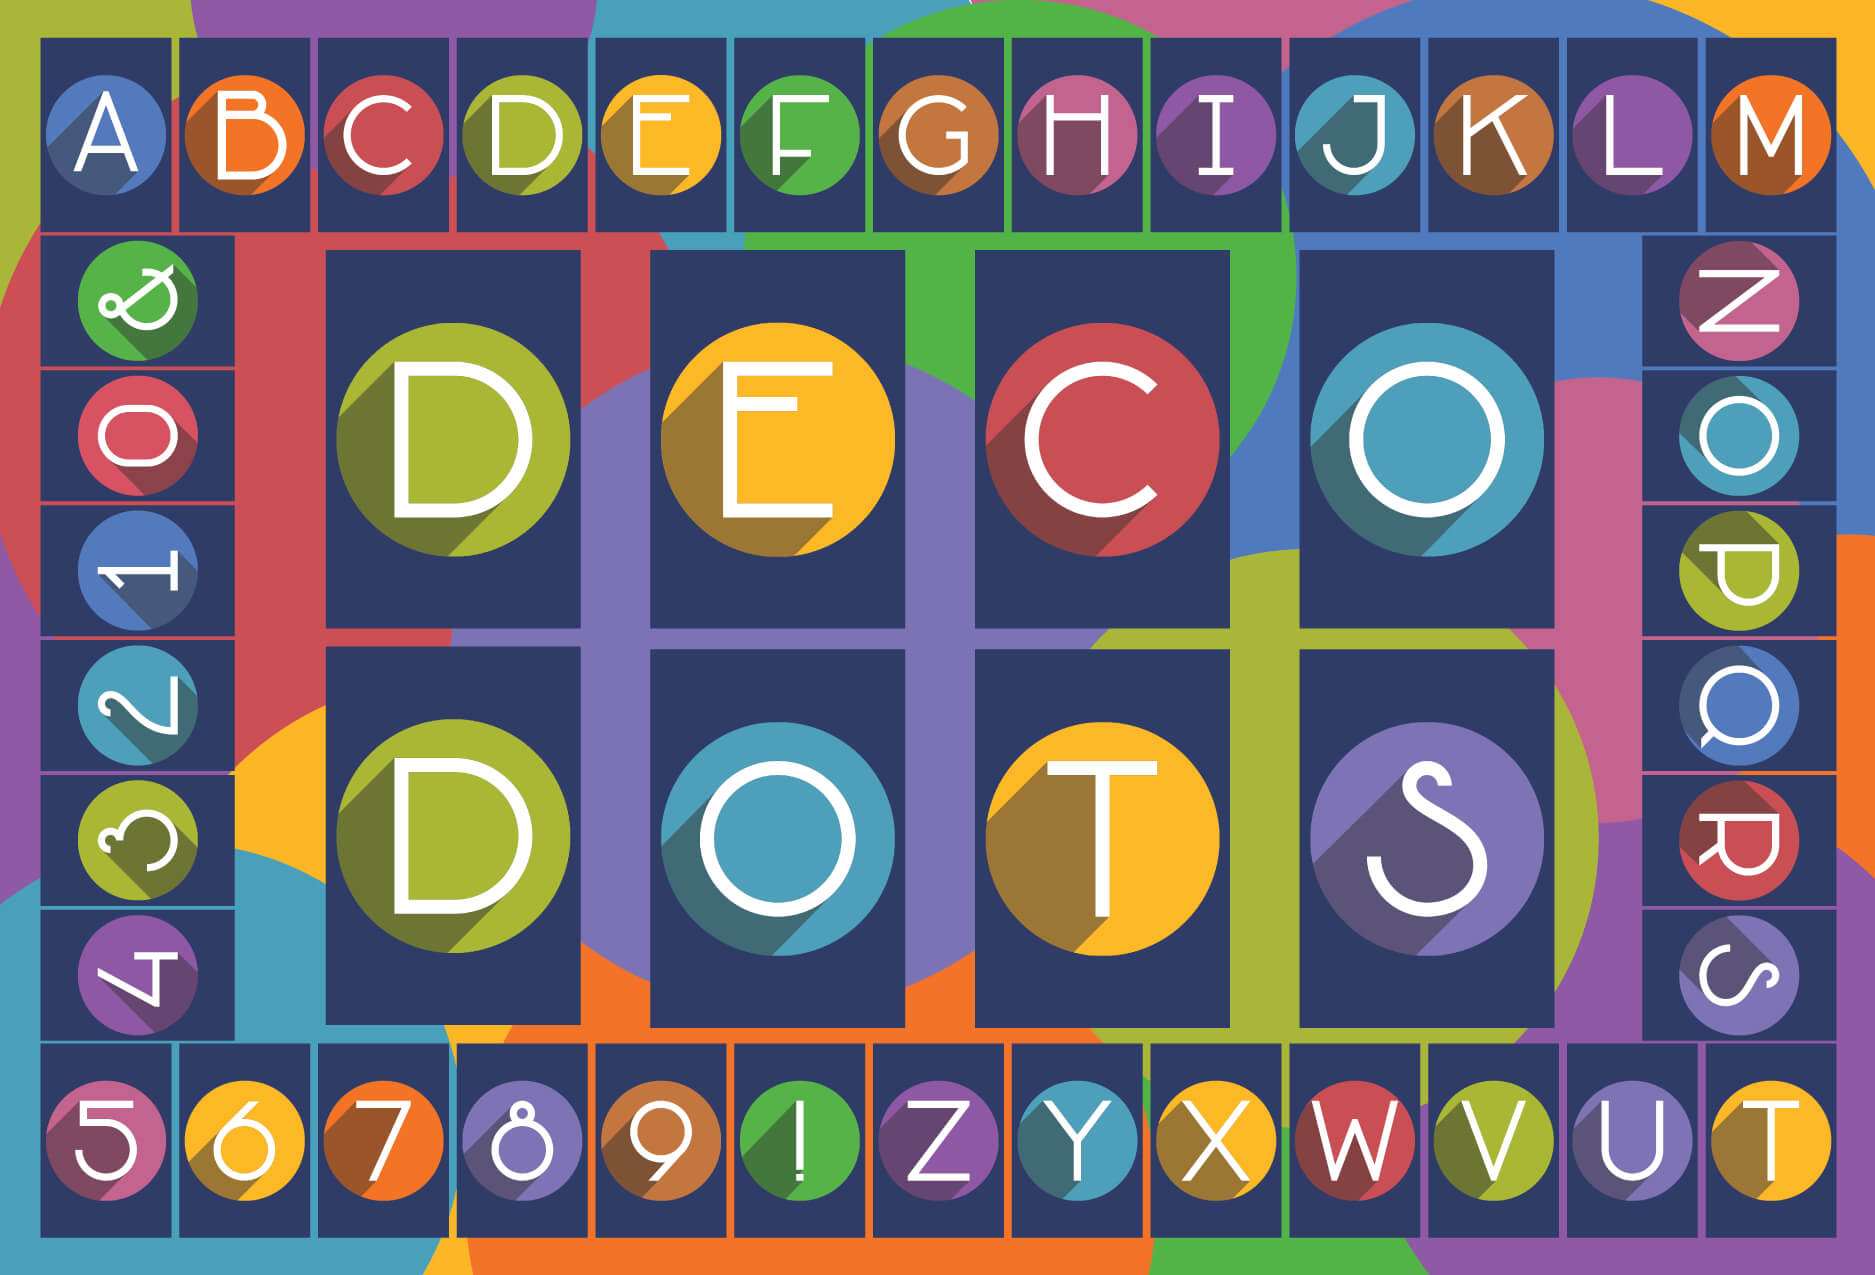 CONGRATULATIONS! - Deco Dots